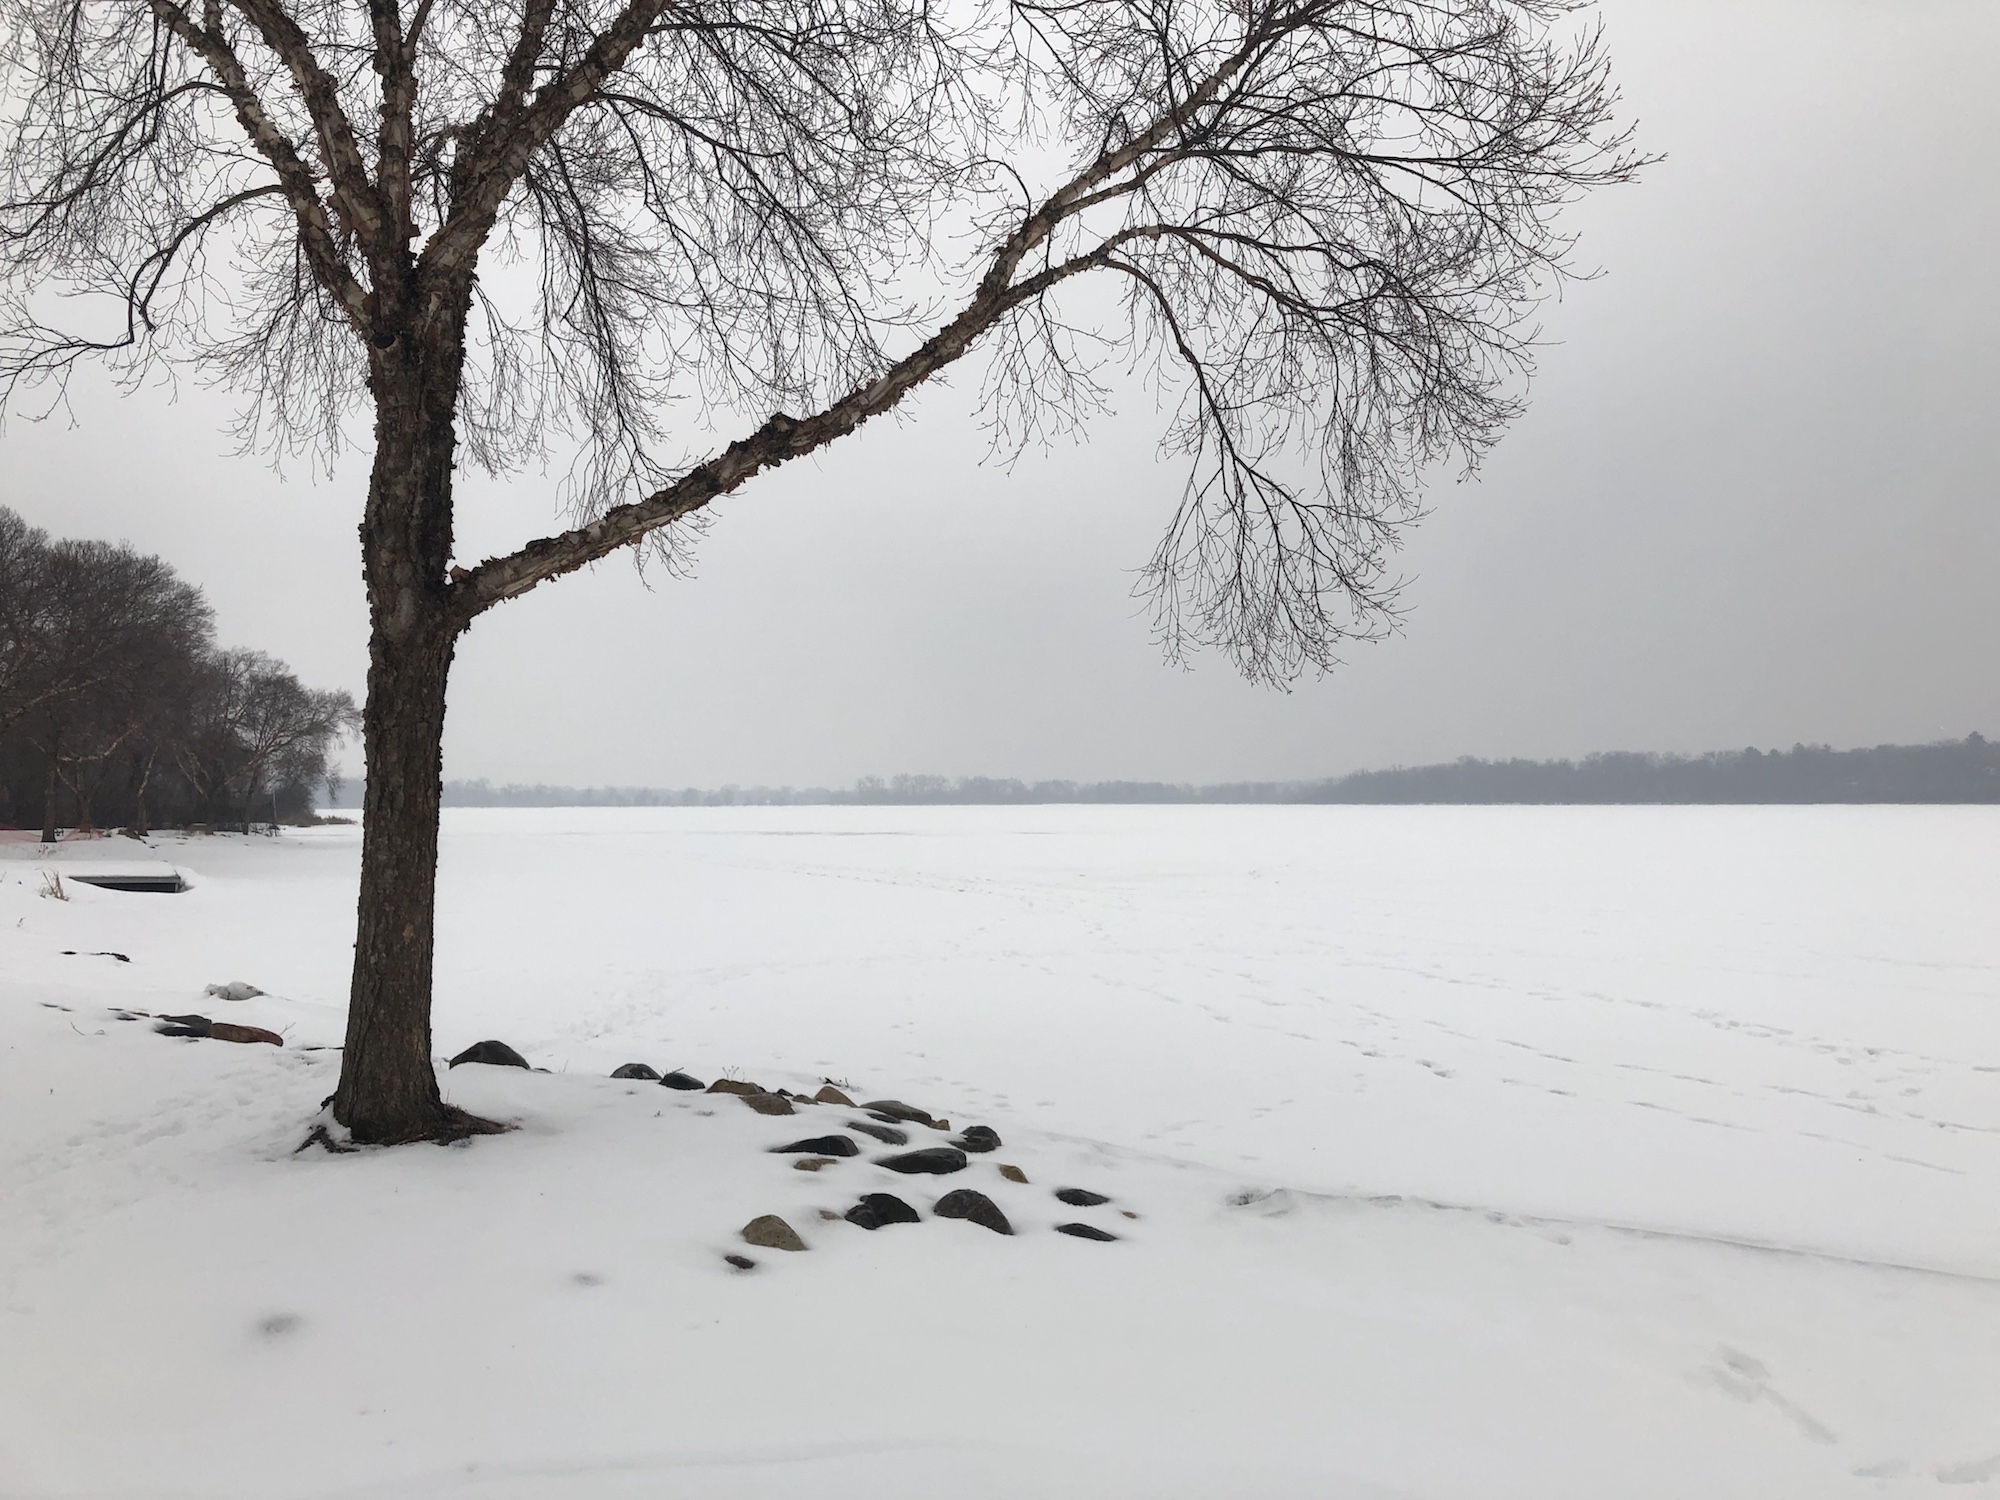 Lake Wingra on February 23, 2019.